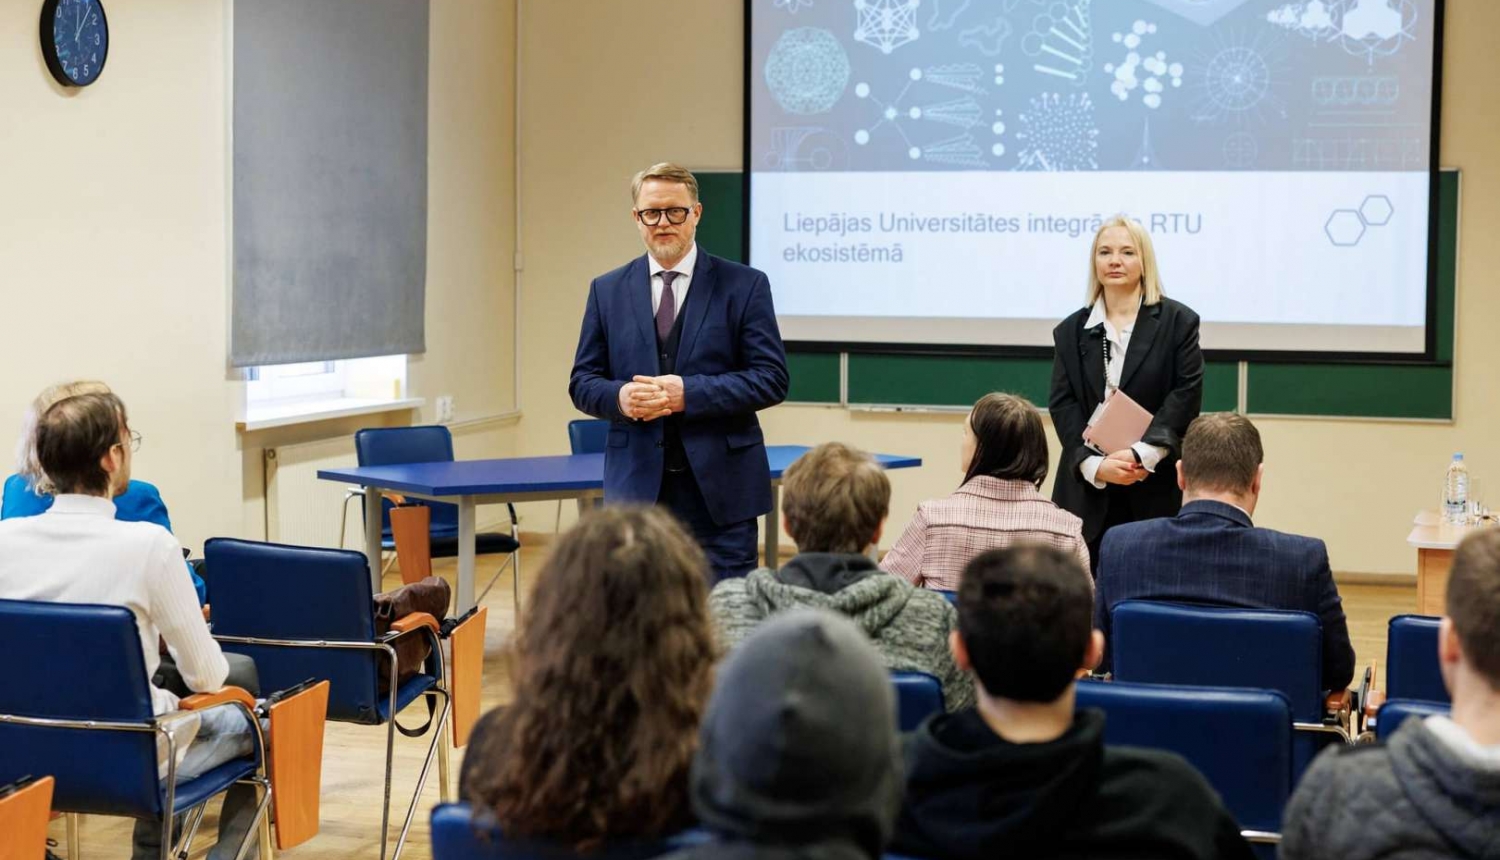 RTU rektors Tālis Juhna un LiepU rektore Dace Medne tiekas ar studentiem Liepājā. Foto – Toms Norde